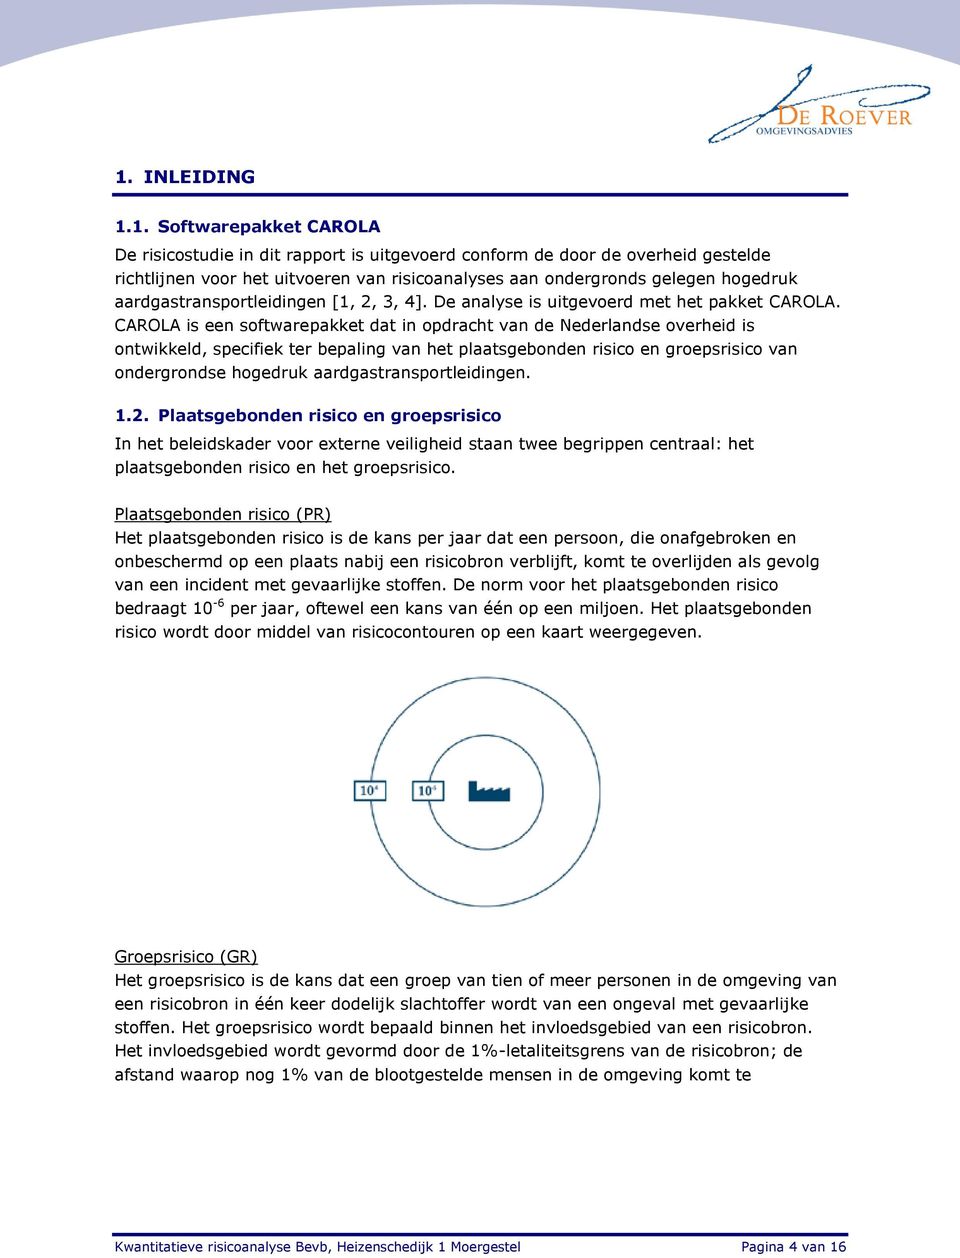 CAROLA is een softwarepakket dat in opdracht van de Nederlandse overheid is ontwikkeld, specifiek ter bepaling van het plaatsgebonden risico en groepsrisico van ondergrondse hogedruk